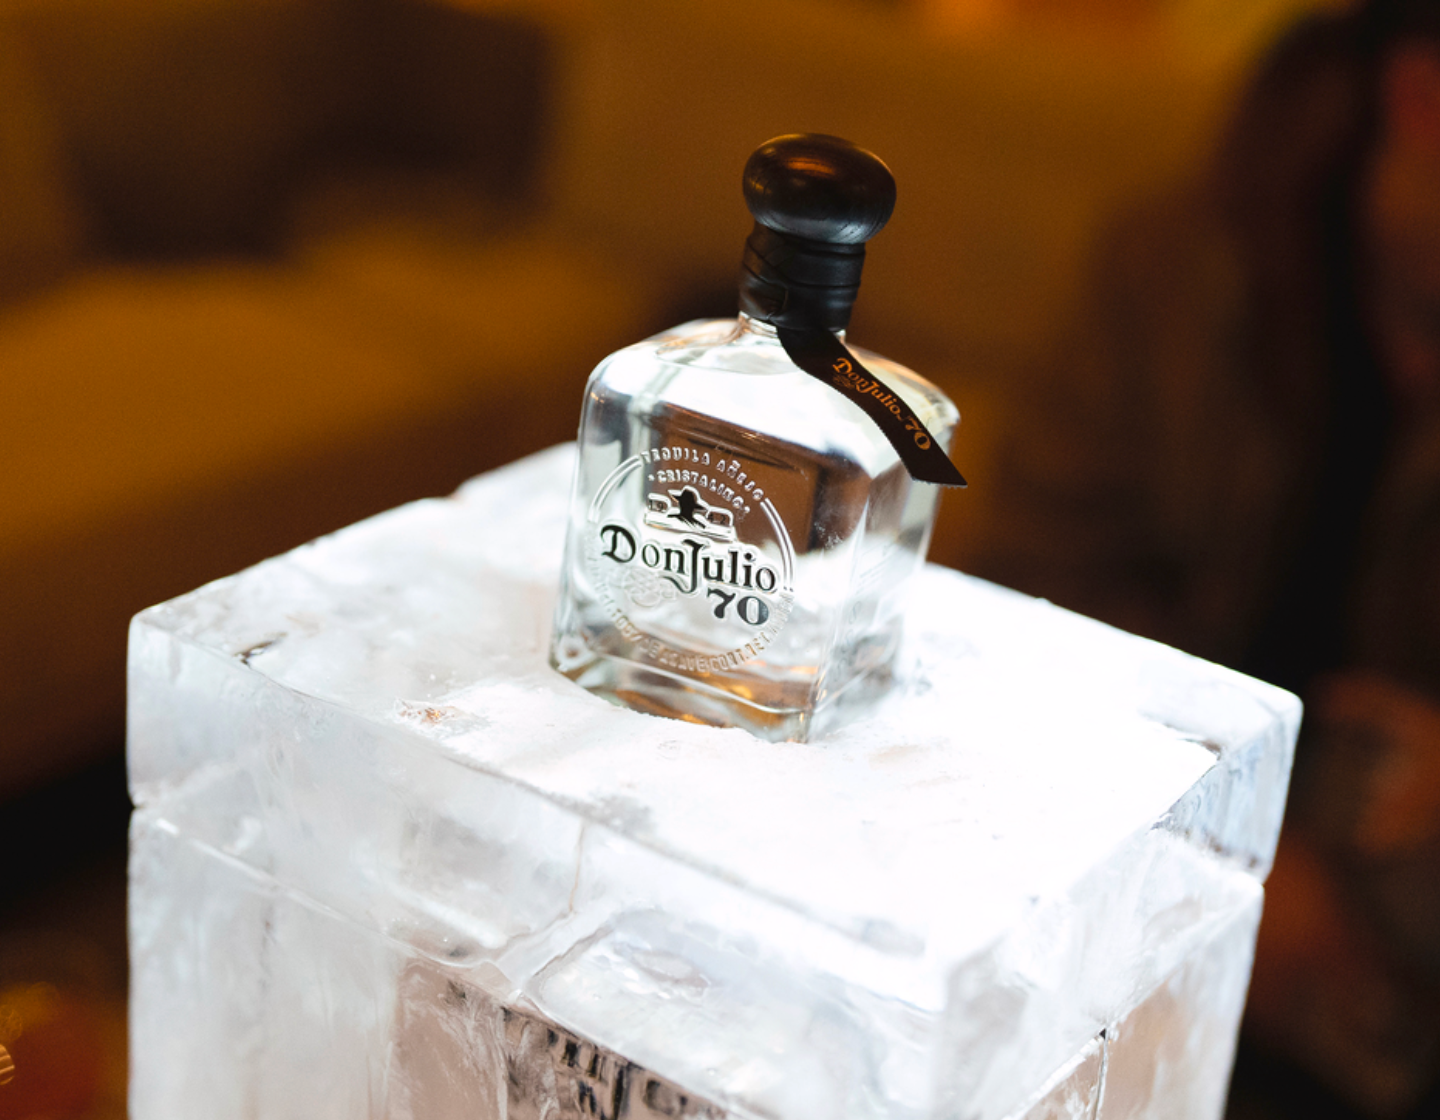 Eine Flasche Don Julio 70 Tequila auf einem Eisblock.